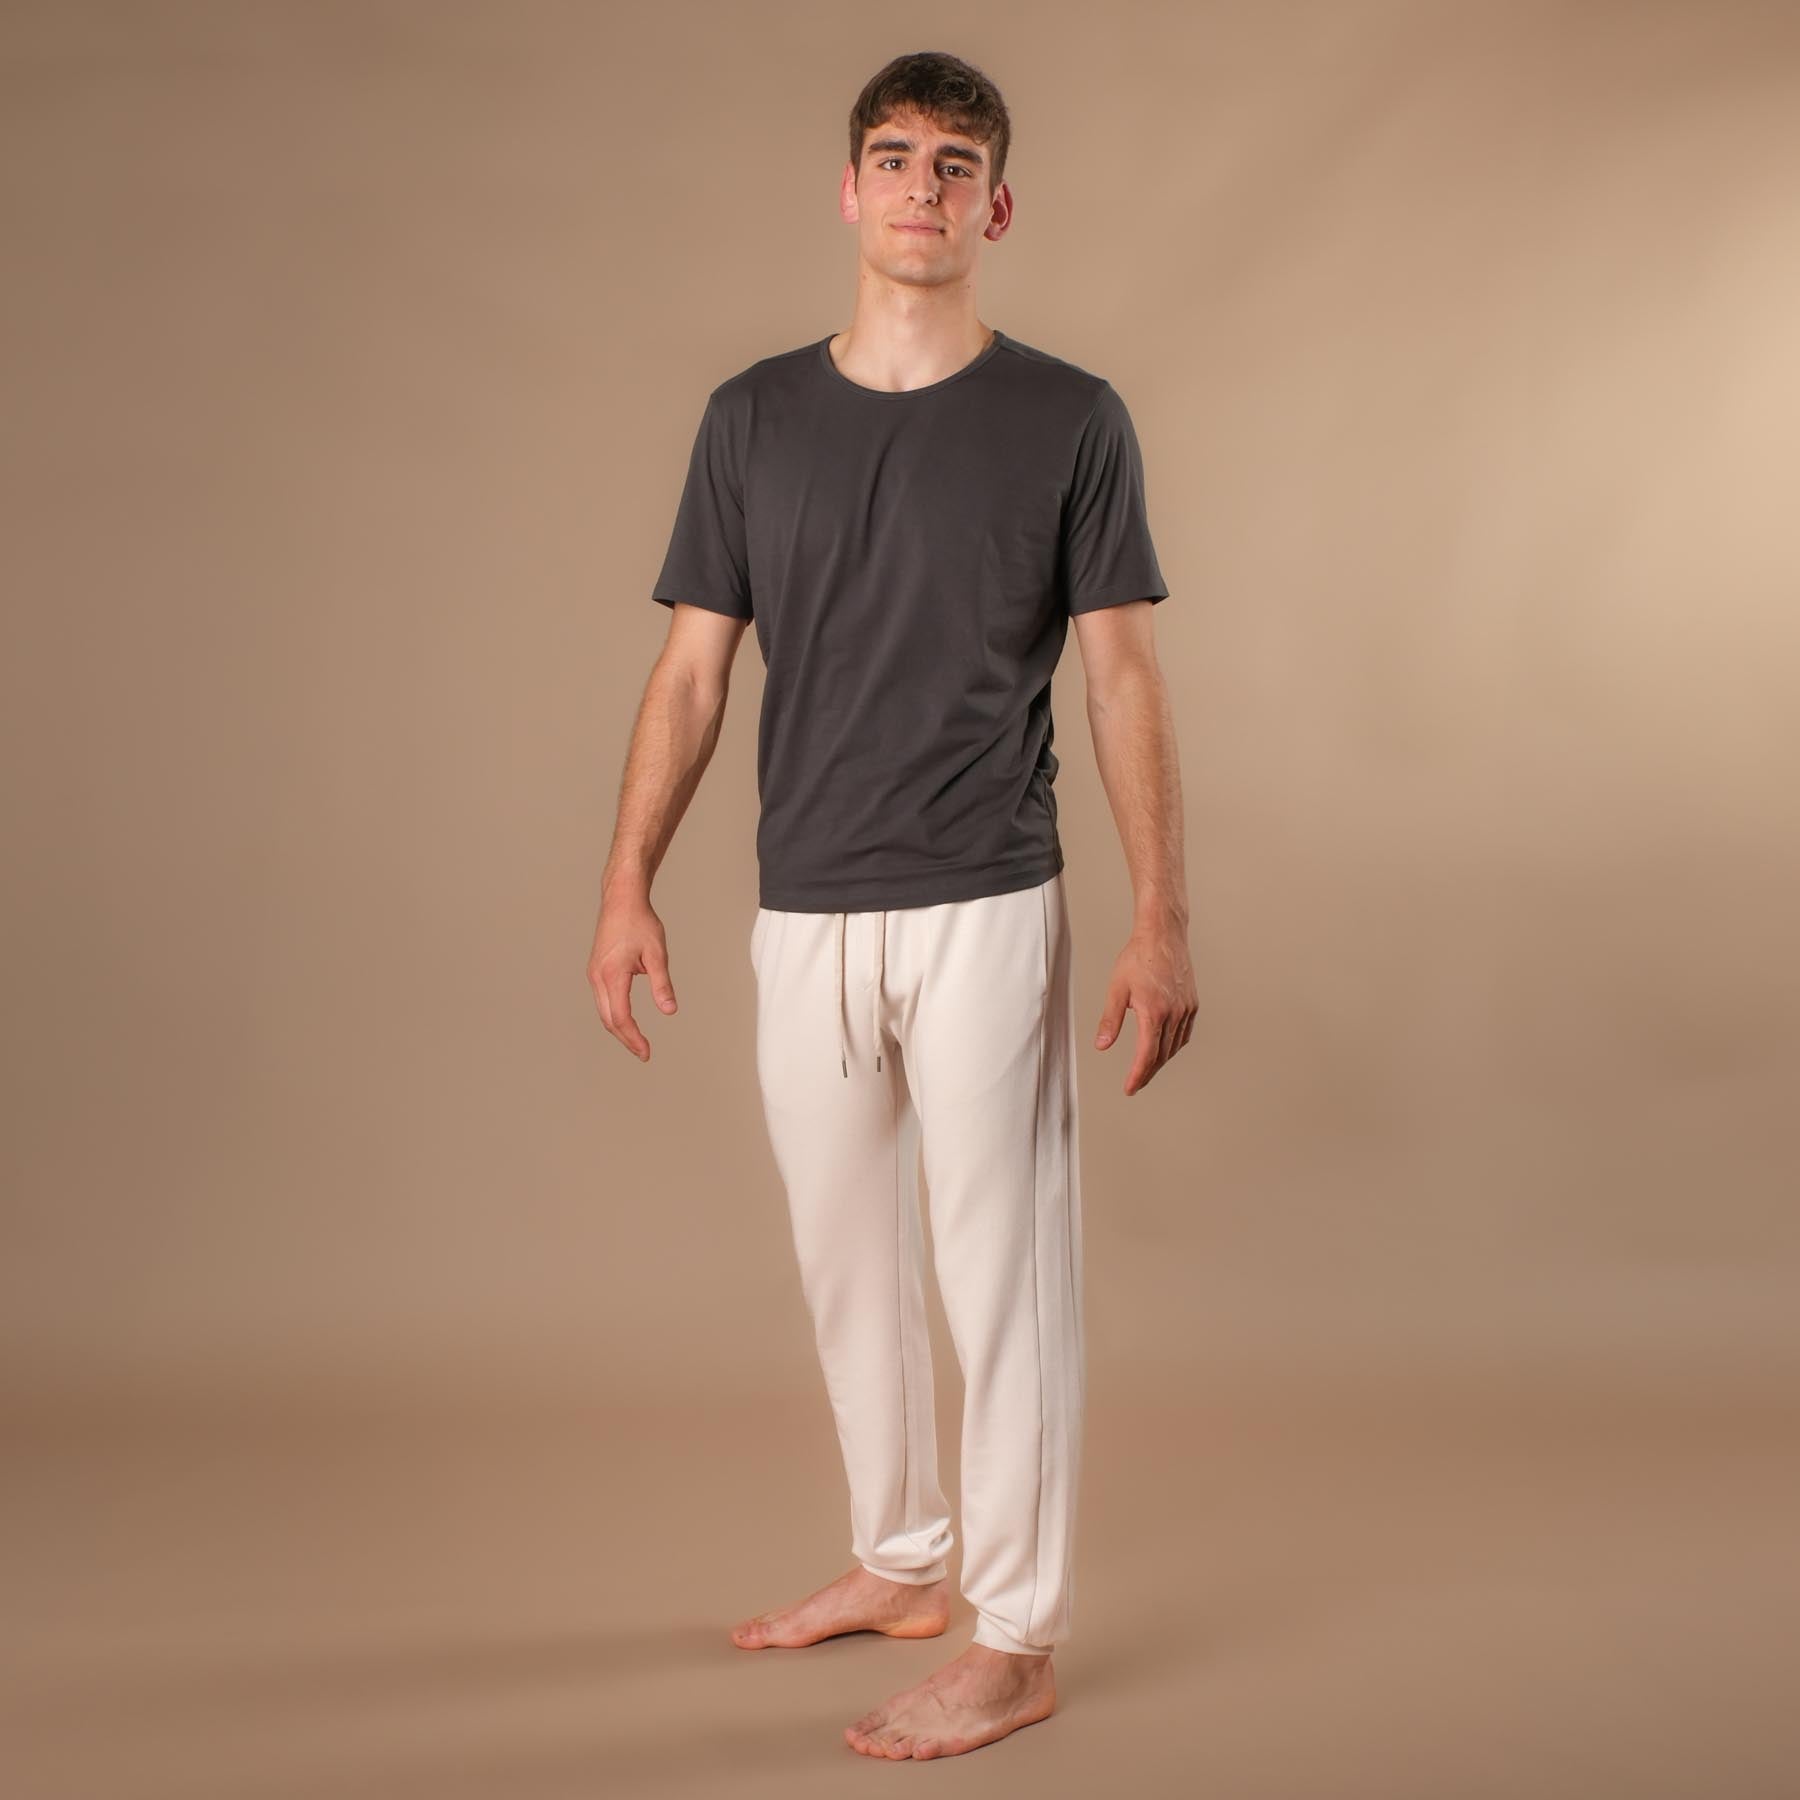 Pantalon de yoga pour hommes Sweatpants écru